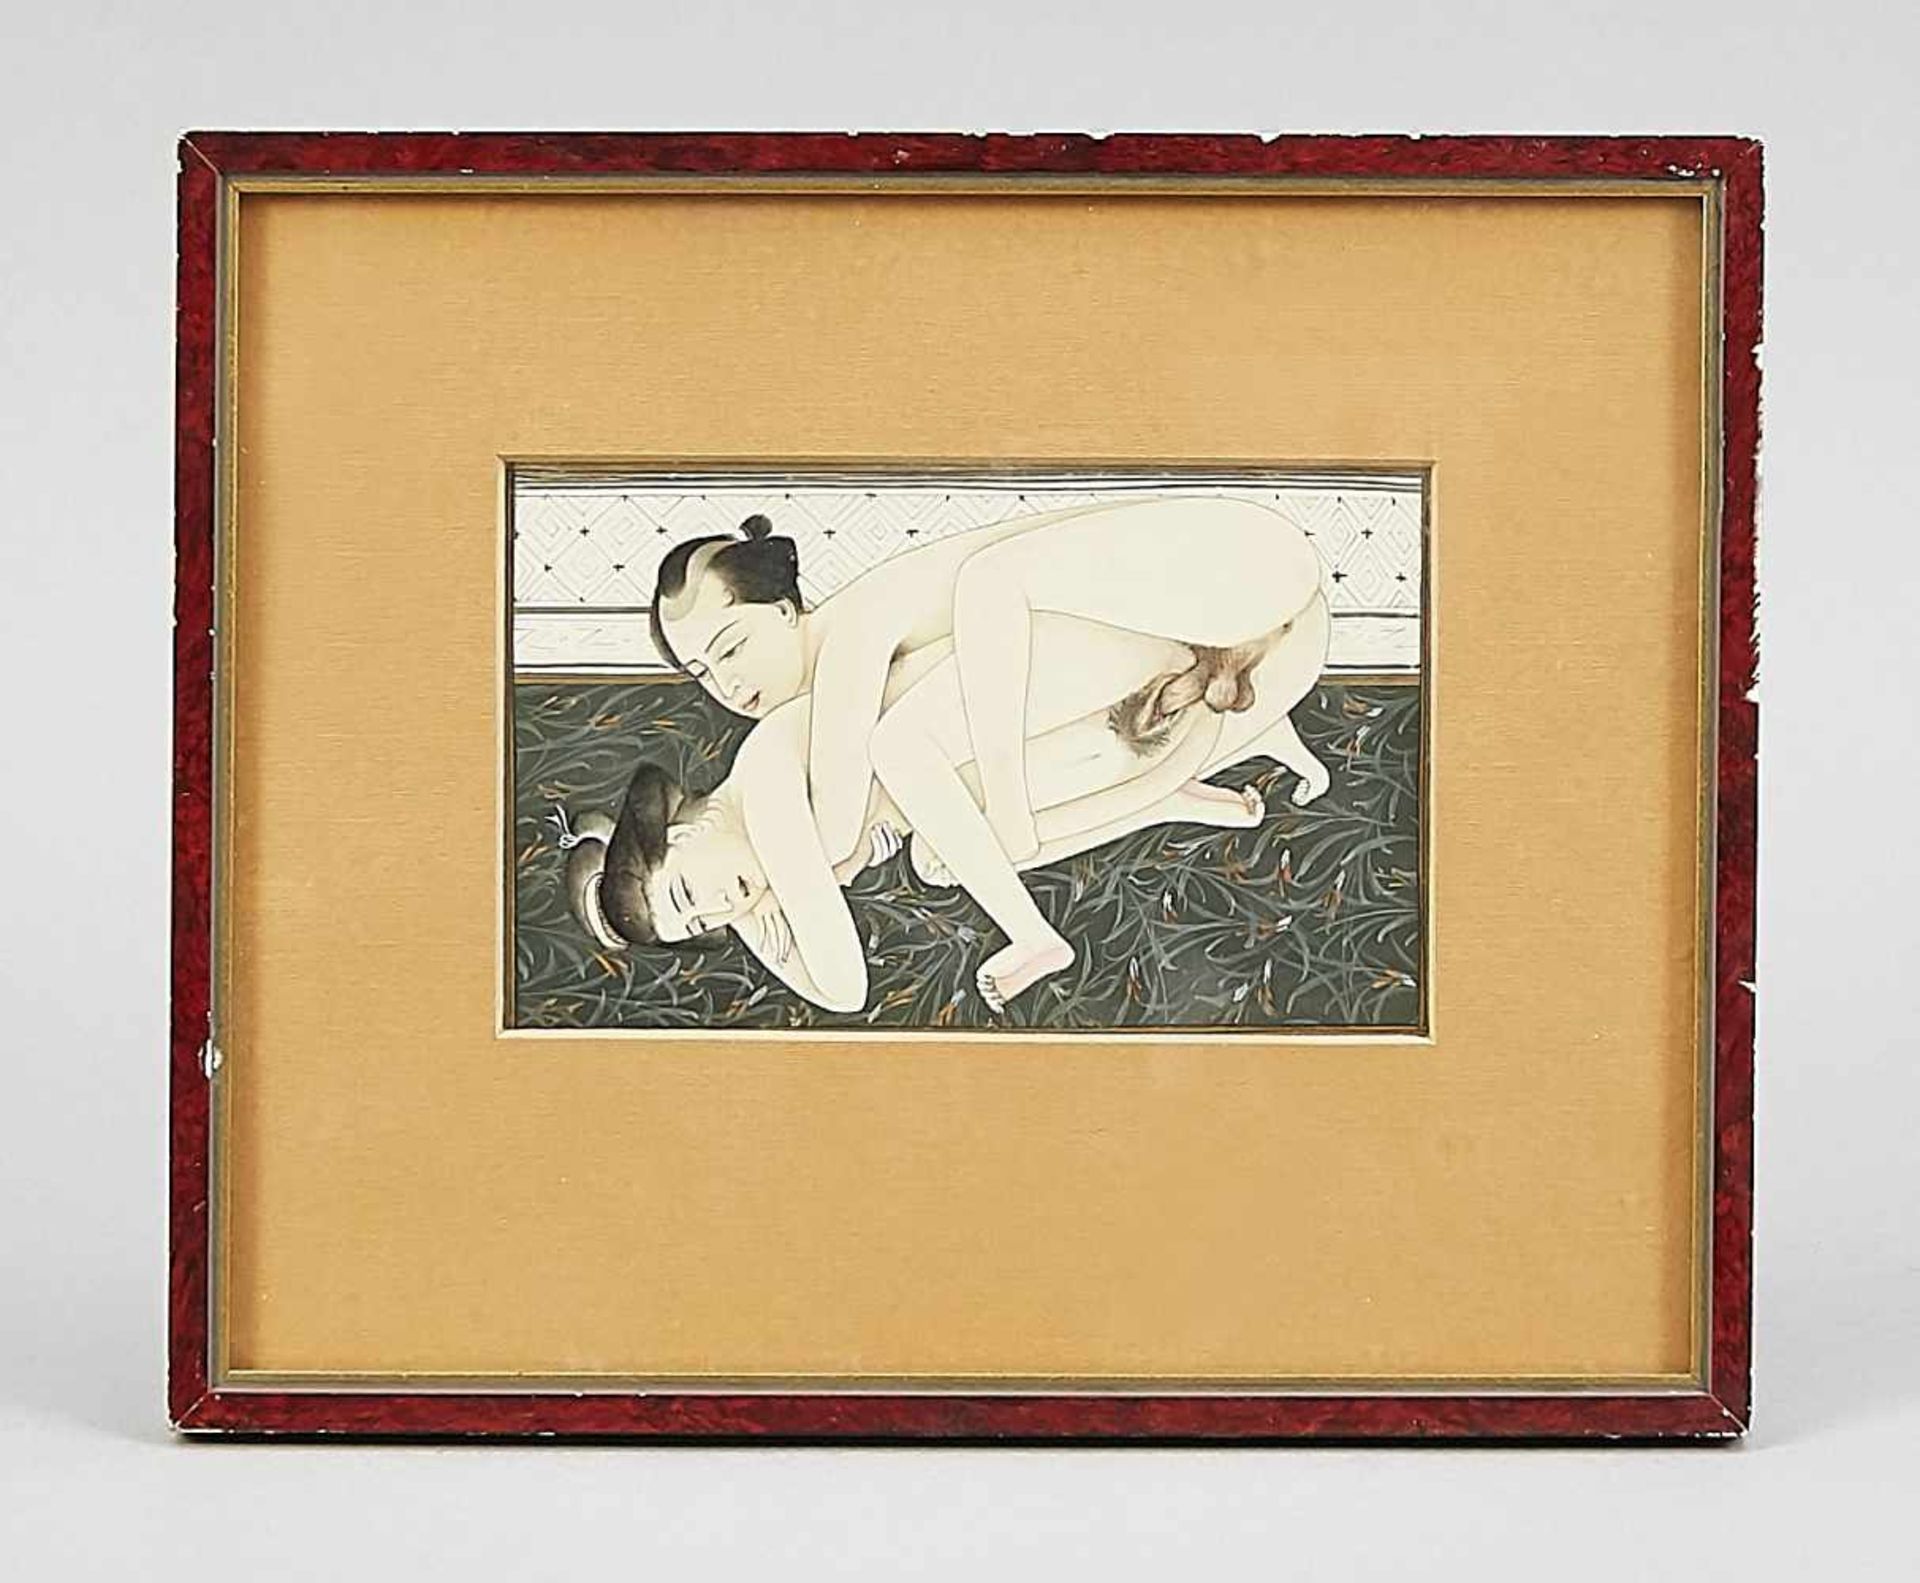 Beinmalerei, China, Ende 19. Jh., Sehr fein ausgeführte polxchrome Malerei auf Beinolattemit